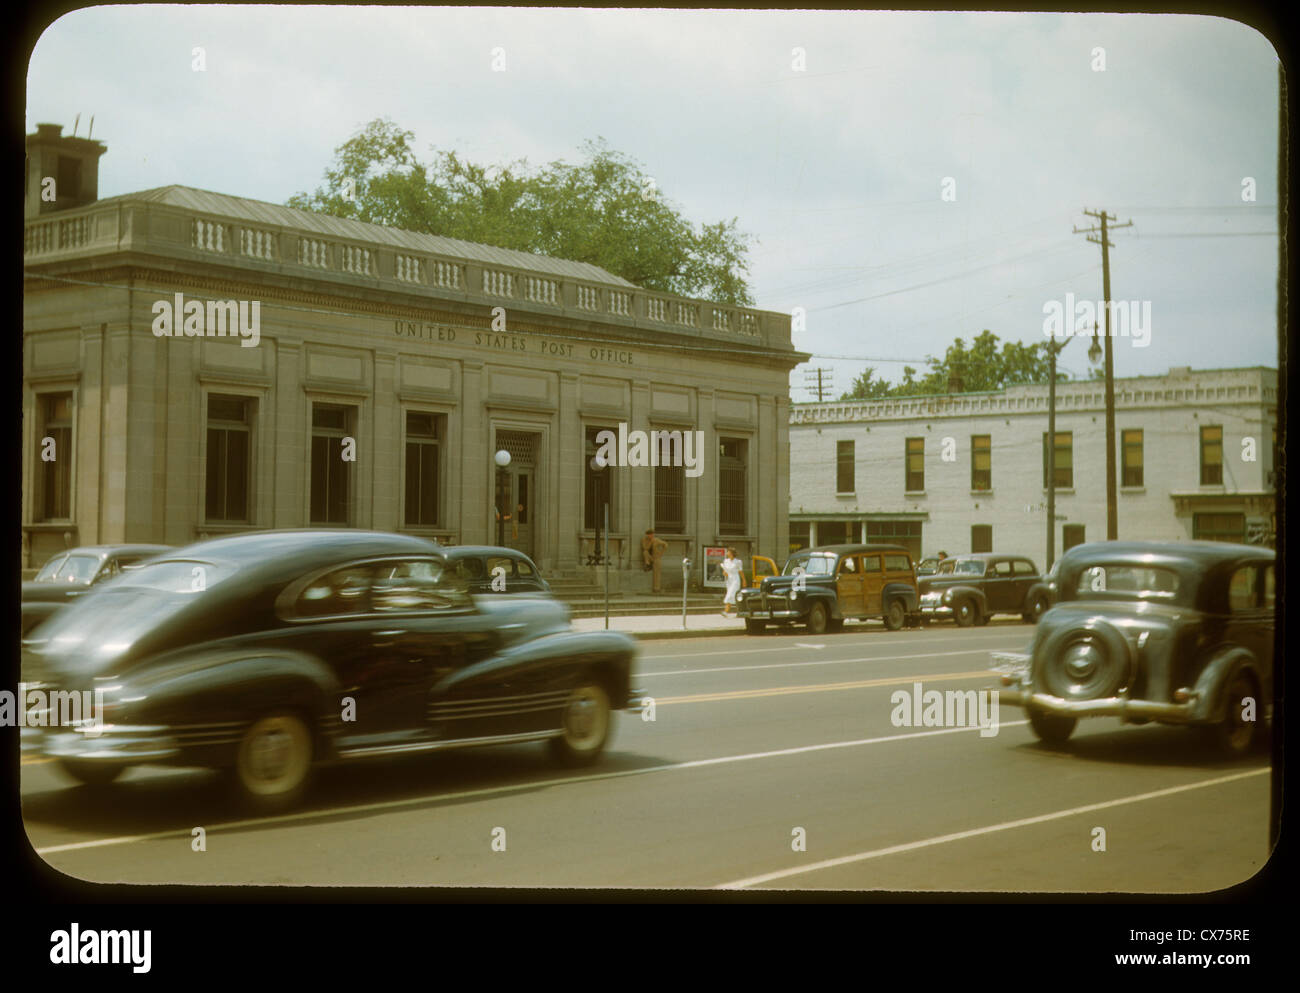 Scena di strada ypsilanti Michigan negli anni quaranta vetture United States Post office building passando il colore kodachrome woody dodge Foto Stock